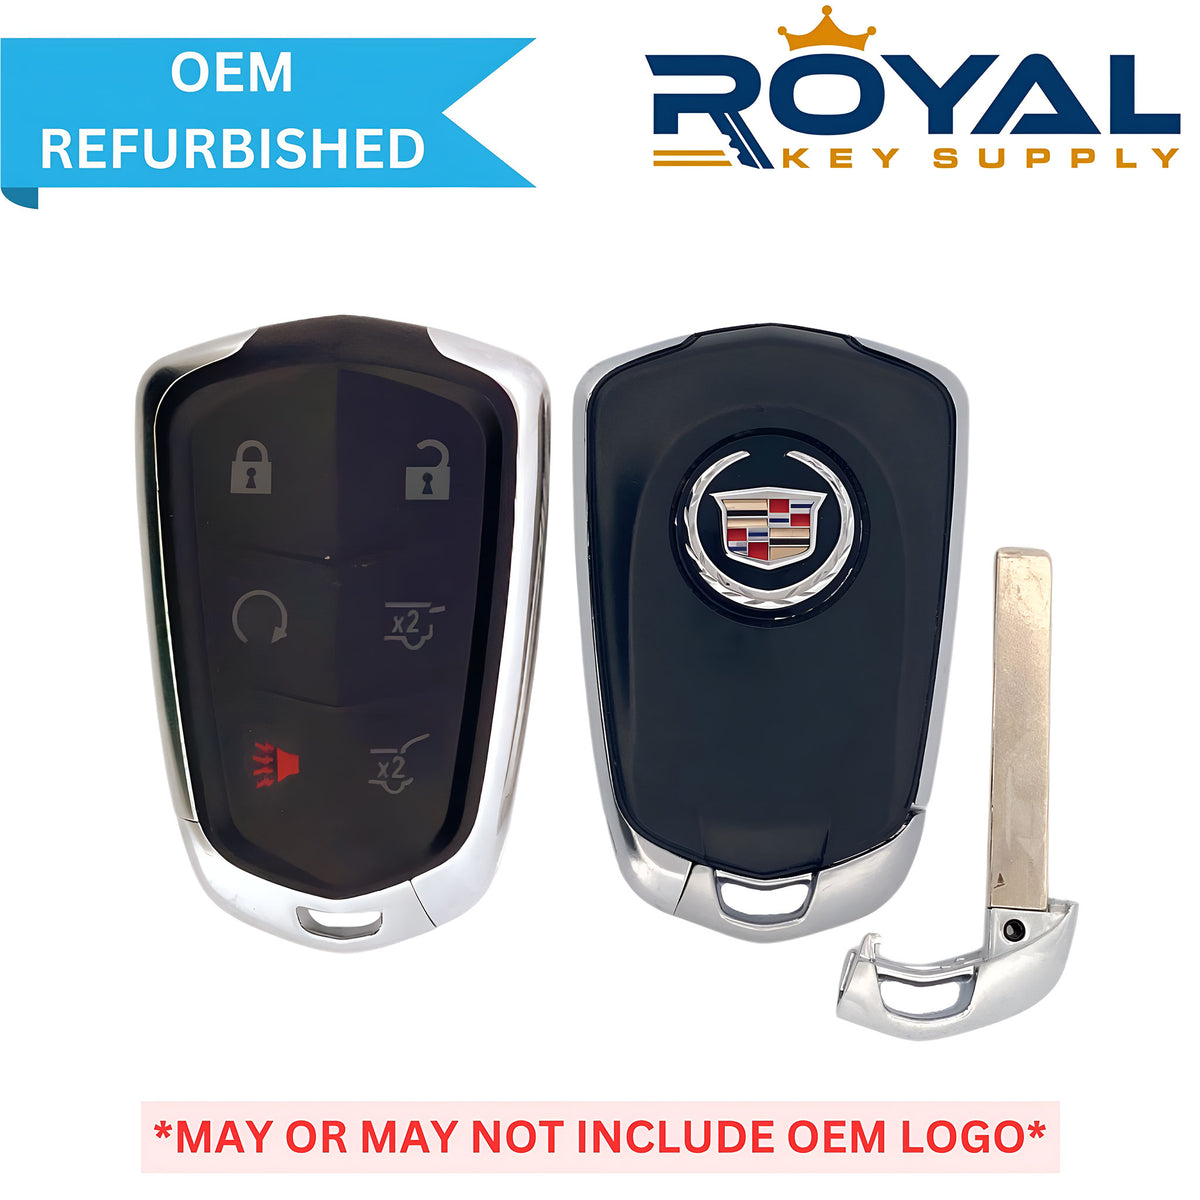 Cadillac Refurbished 2015 Escalade Smart Key 6B Hatch/Glass/Remote Start FCCID: HYQ2EB PN# 13598512 - Royal Key Supply